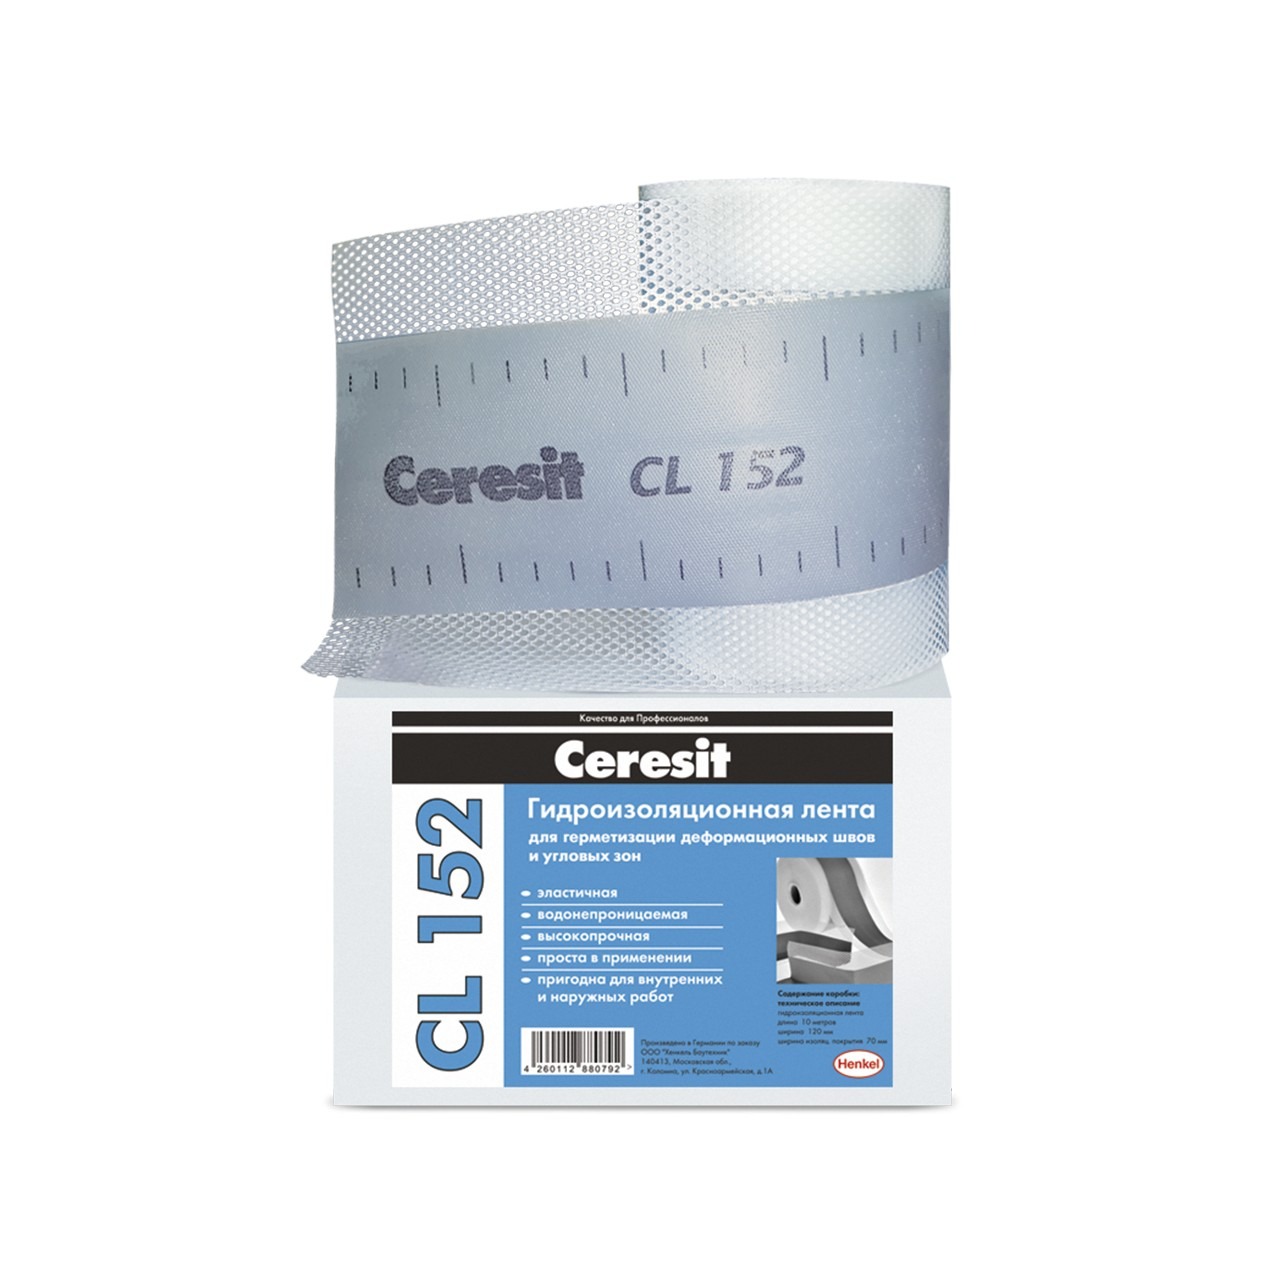 Ceresit CL152 Лента для гидроизоляции, 10 м